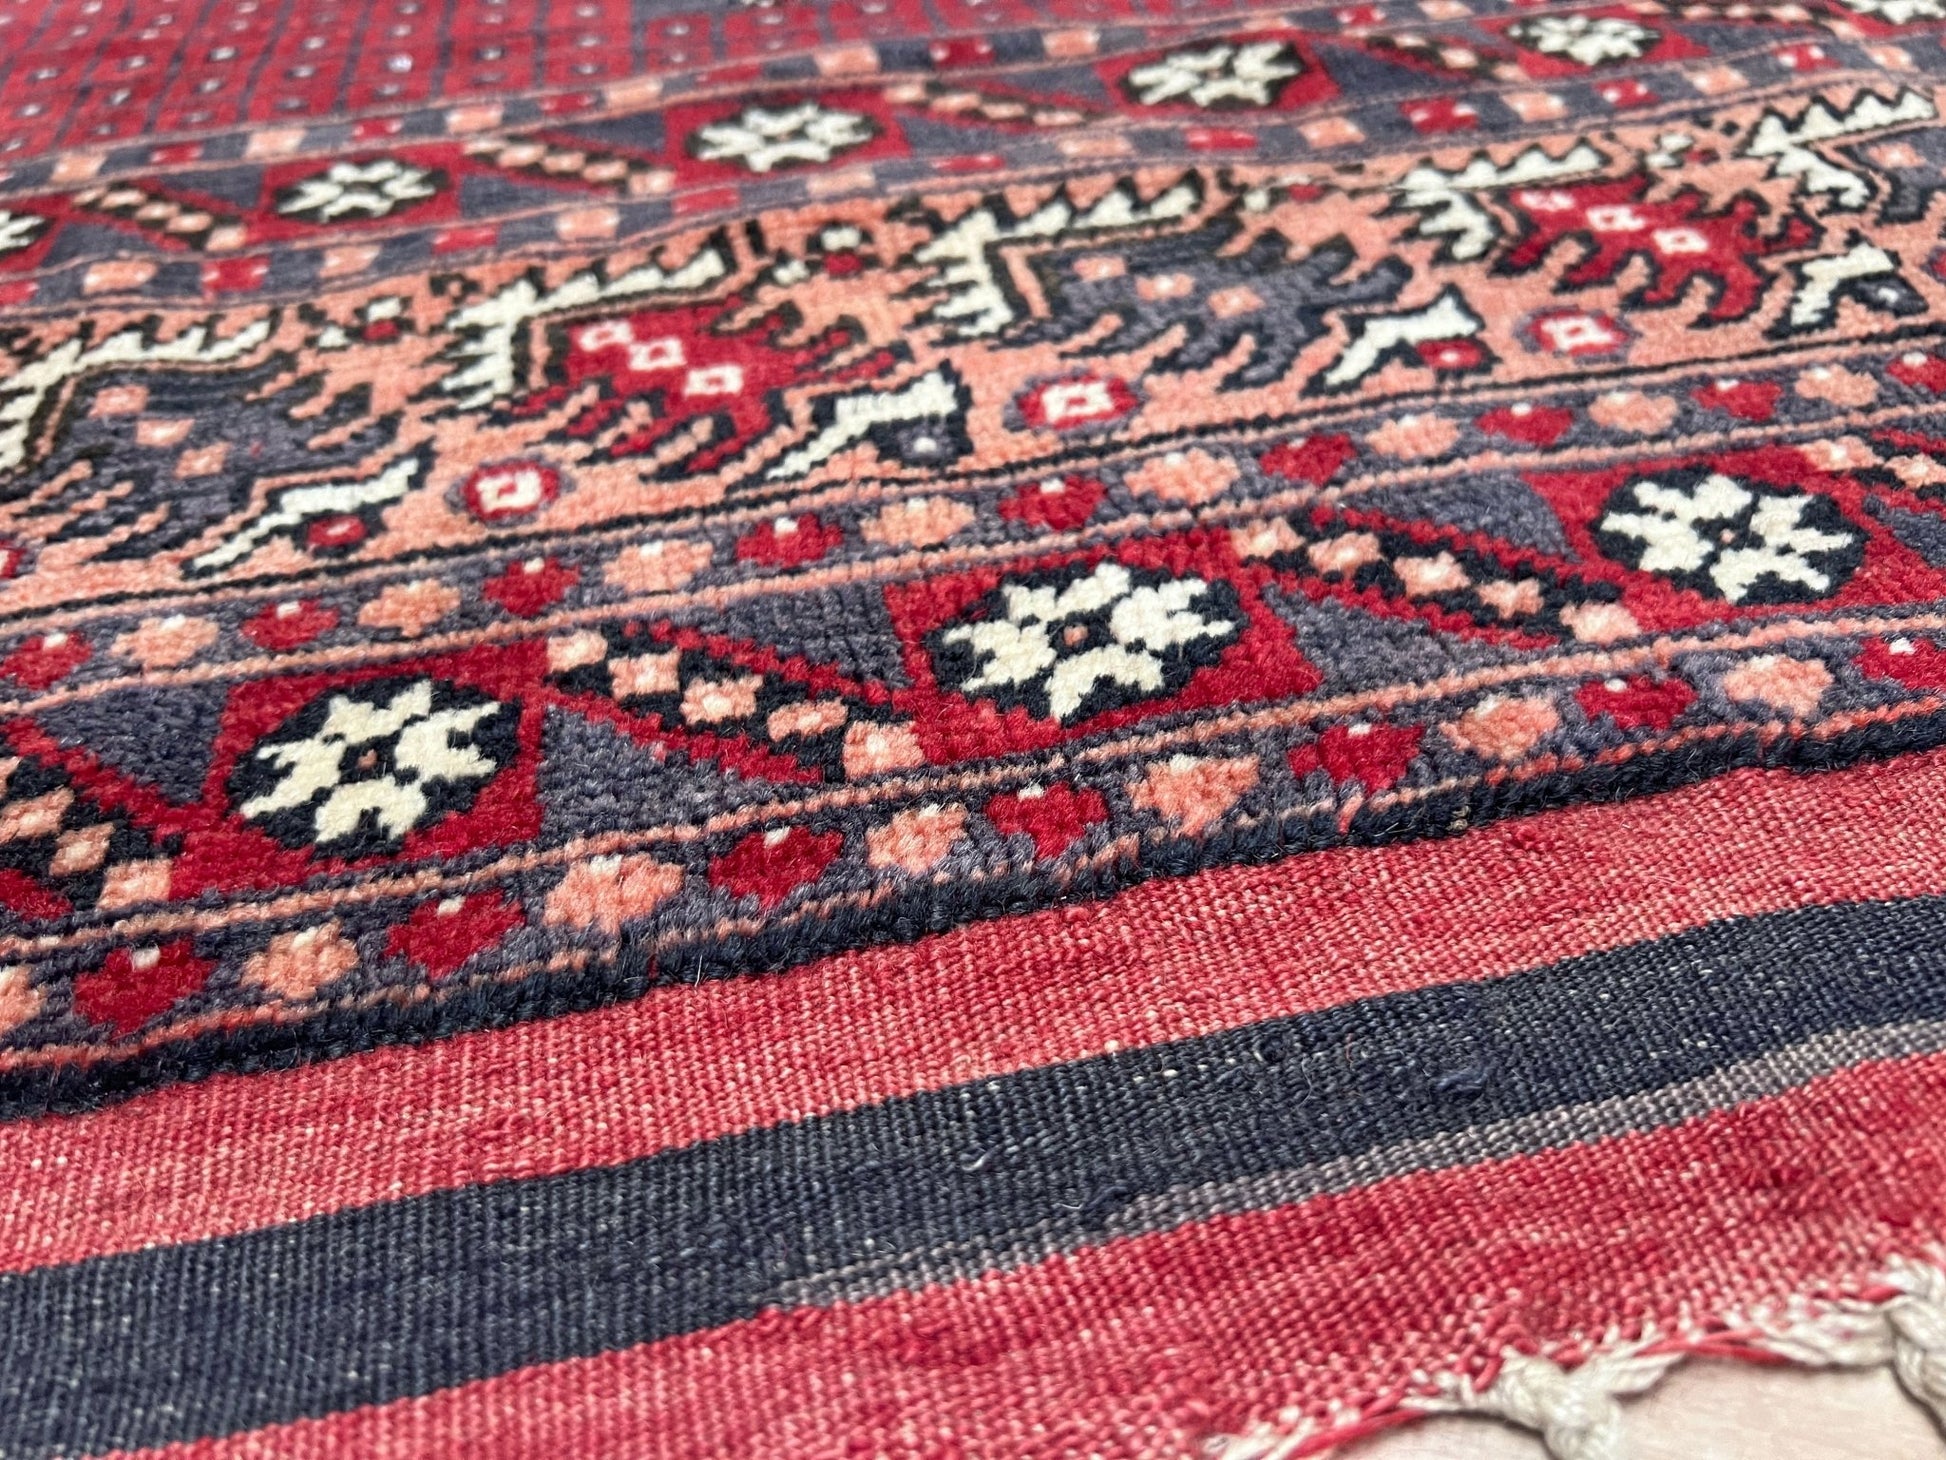 Yagcibedir vintage turkish prayer rug. Small 3x5 handmade wool rug rug shop san francisco bay area. Buy handmade rug online